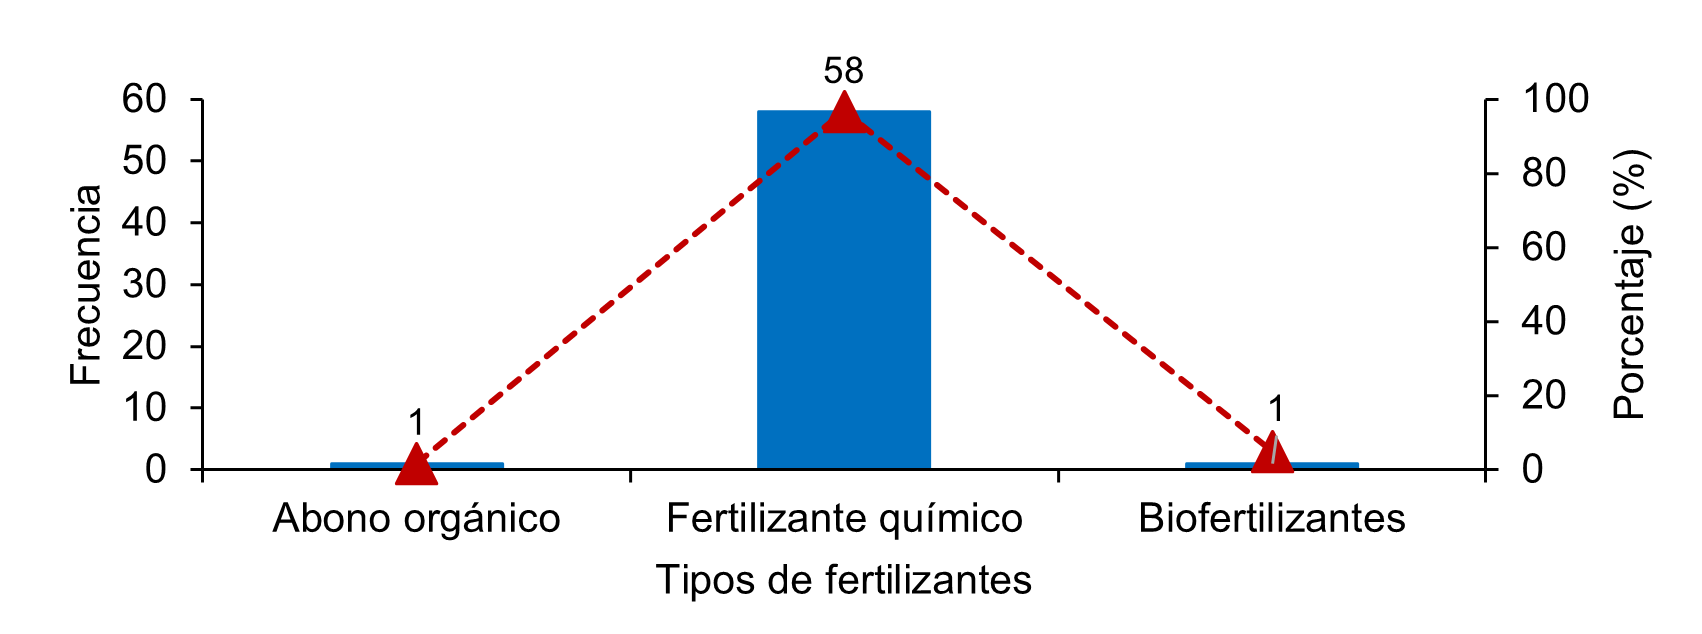 Tipos de fertilizantes empleados por los productores de repollo en cuatro cooperativas rurales de Jinotega Nicaragua